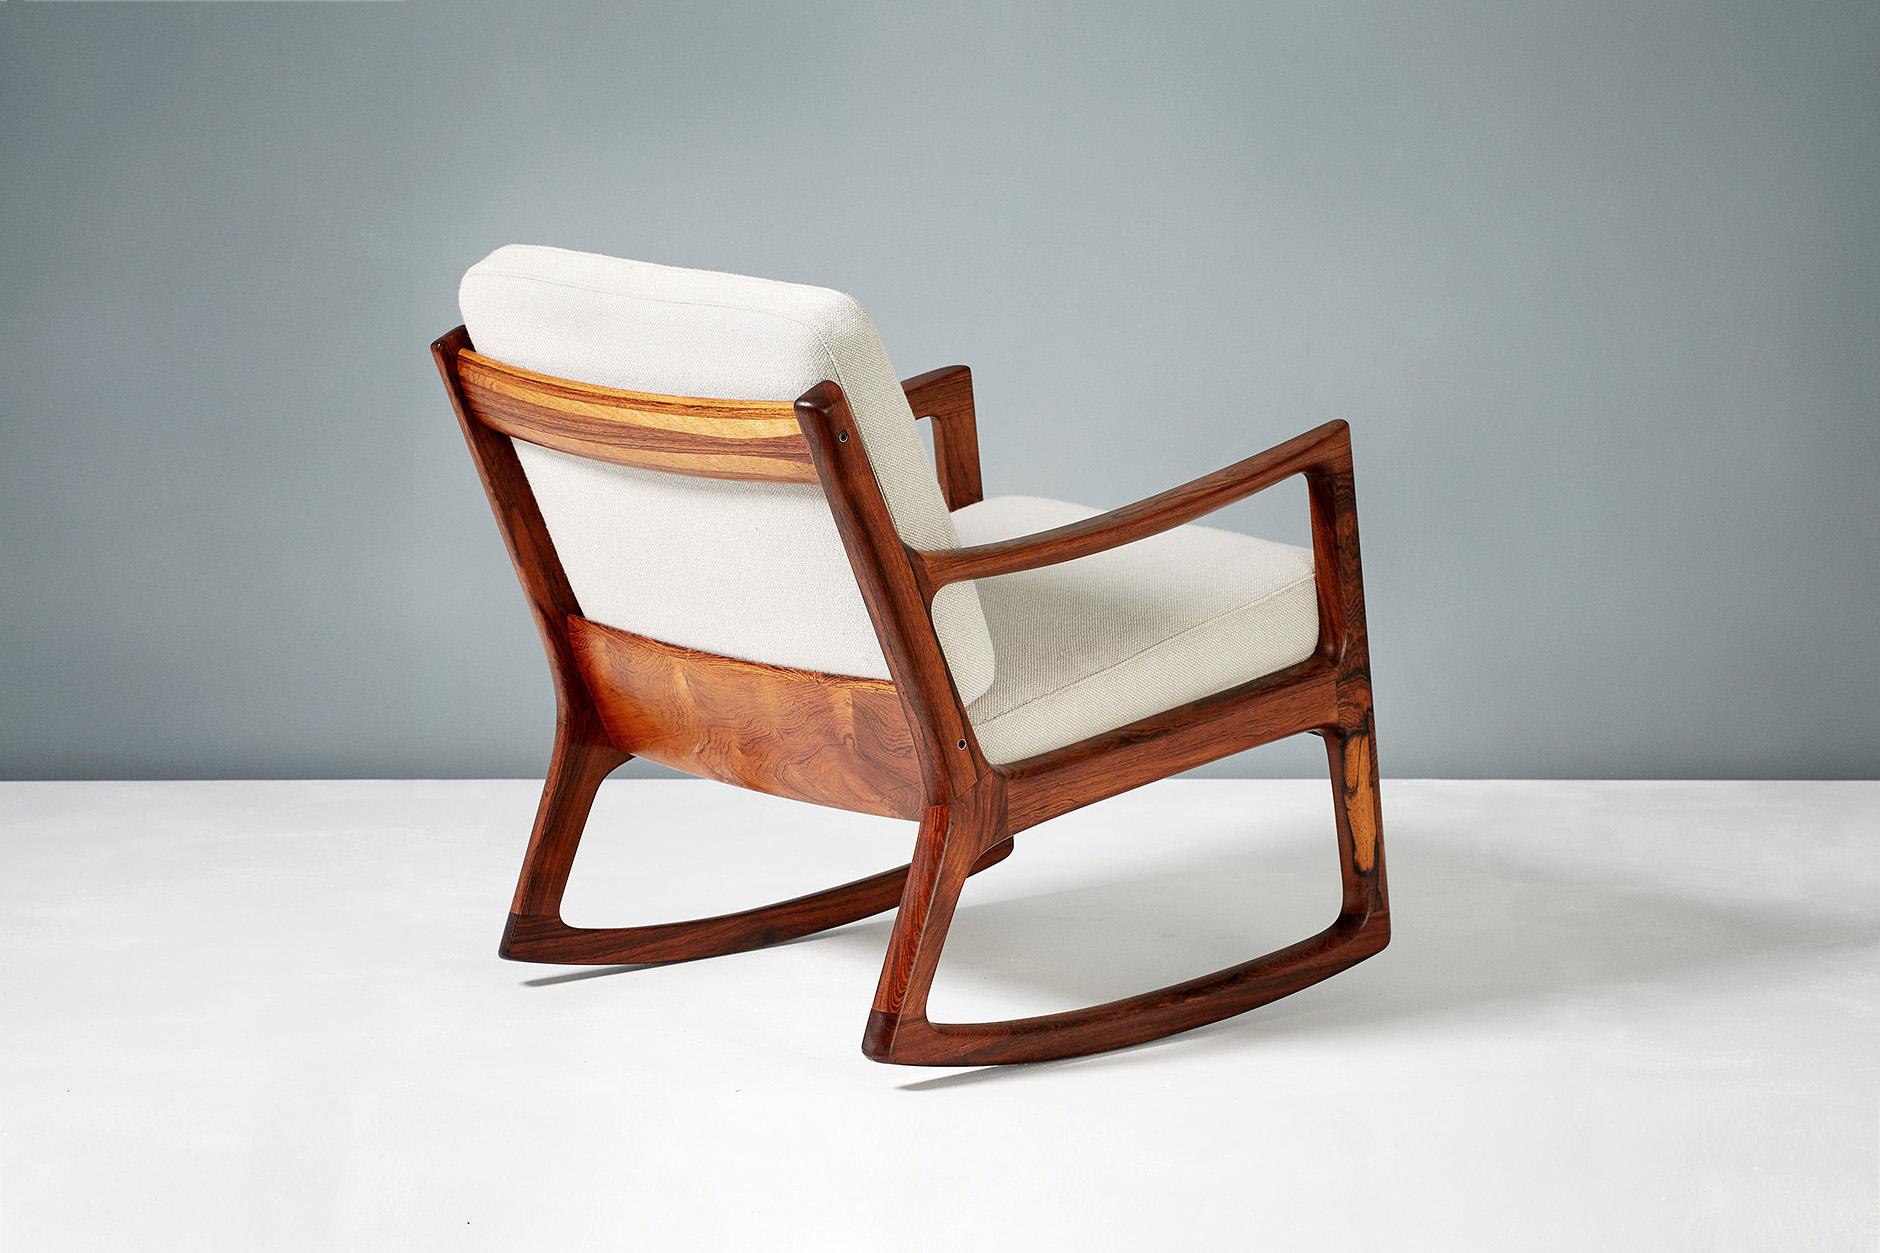 Scandinavian Modern Ole Wanscher Rosewood Rocking Chair, circa 1960